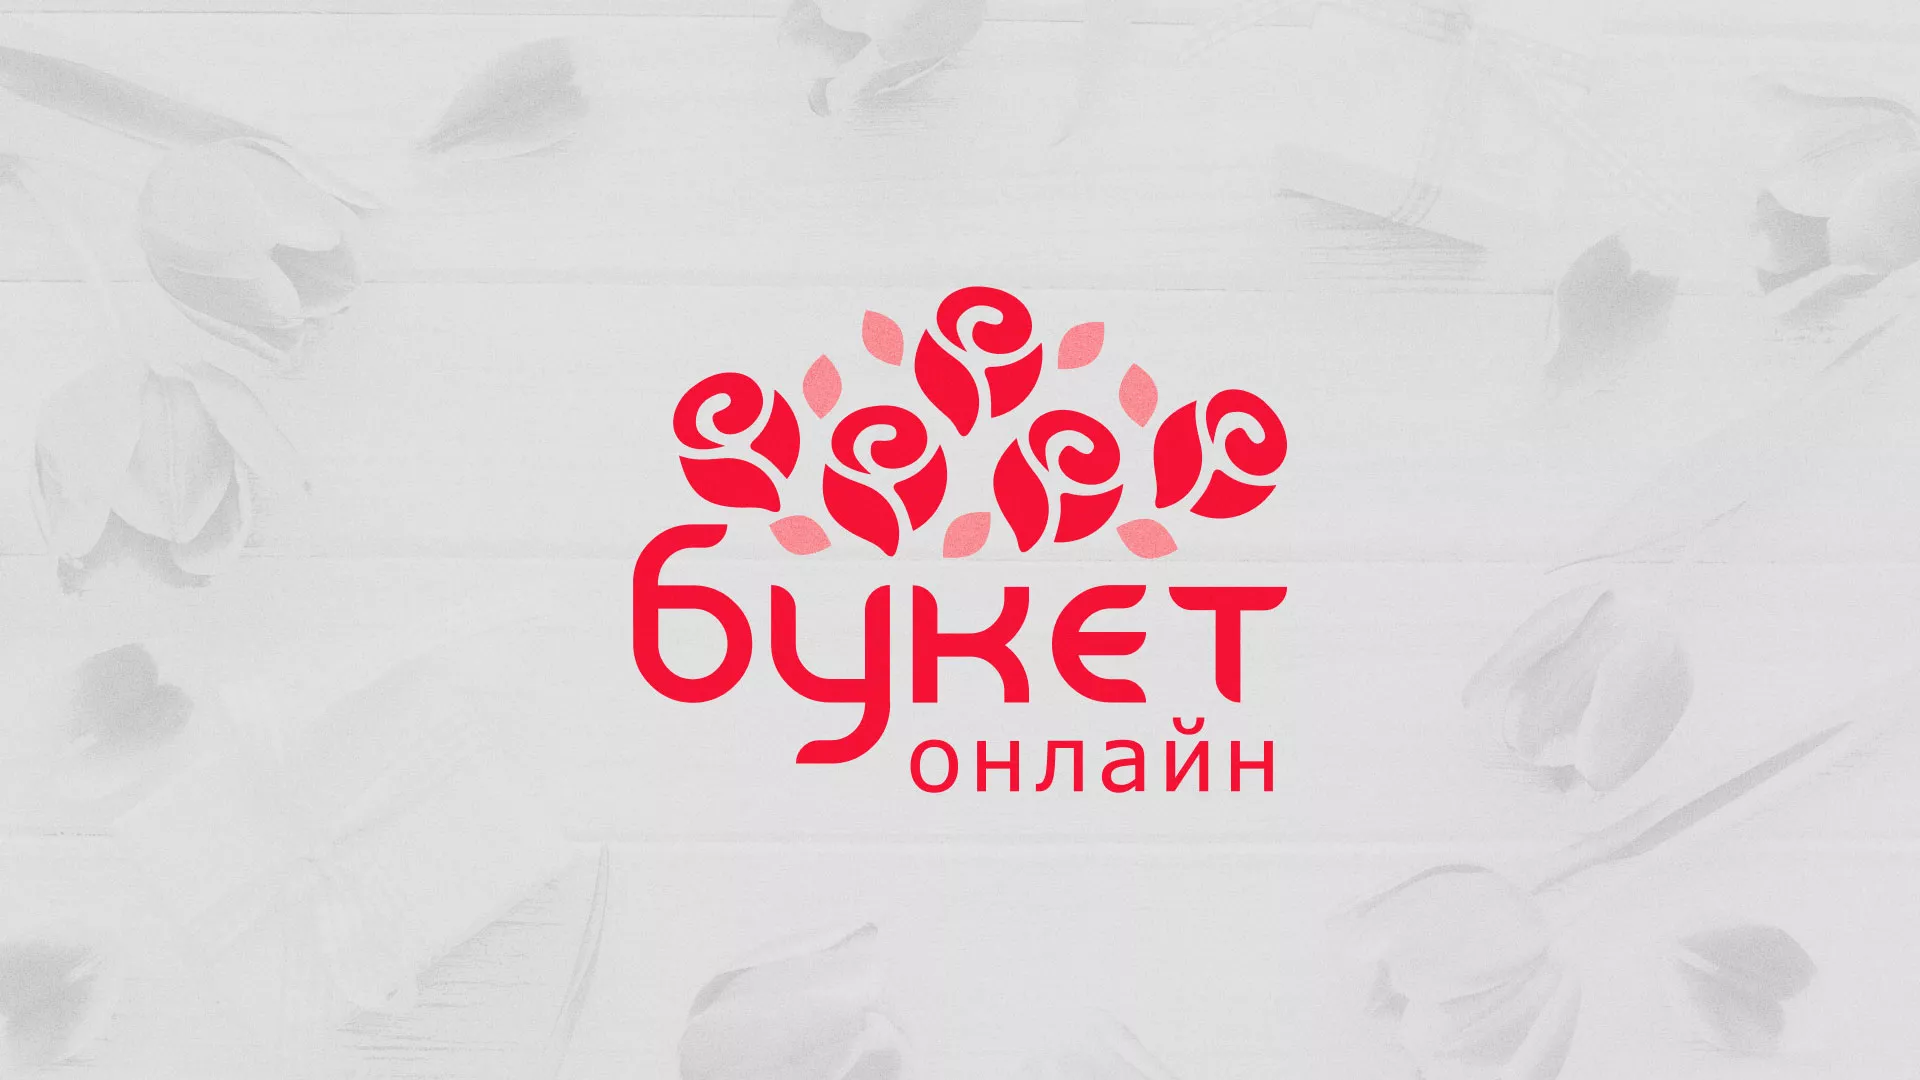 Создание интернет-магазина «Букет-онлайн» по цветам в Кологриве